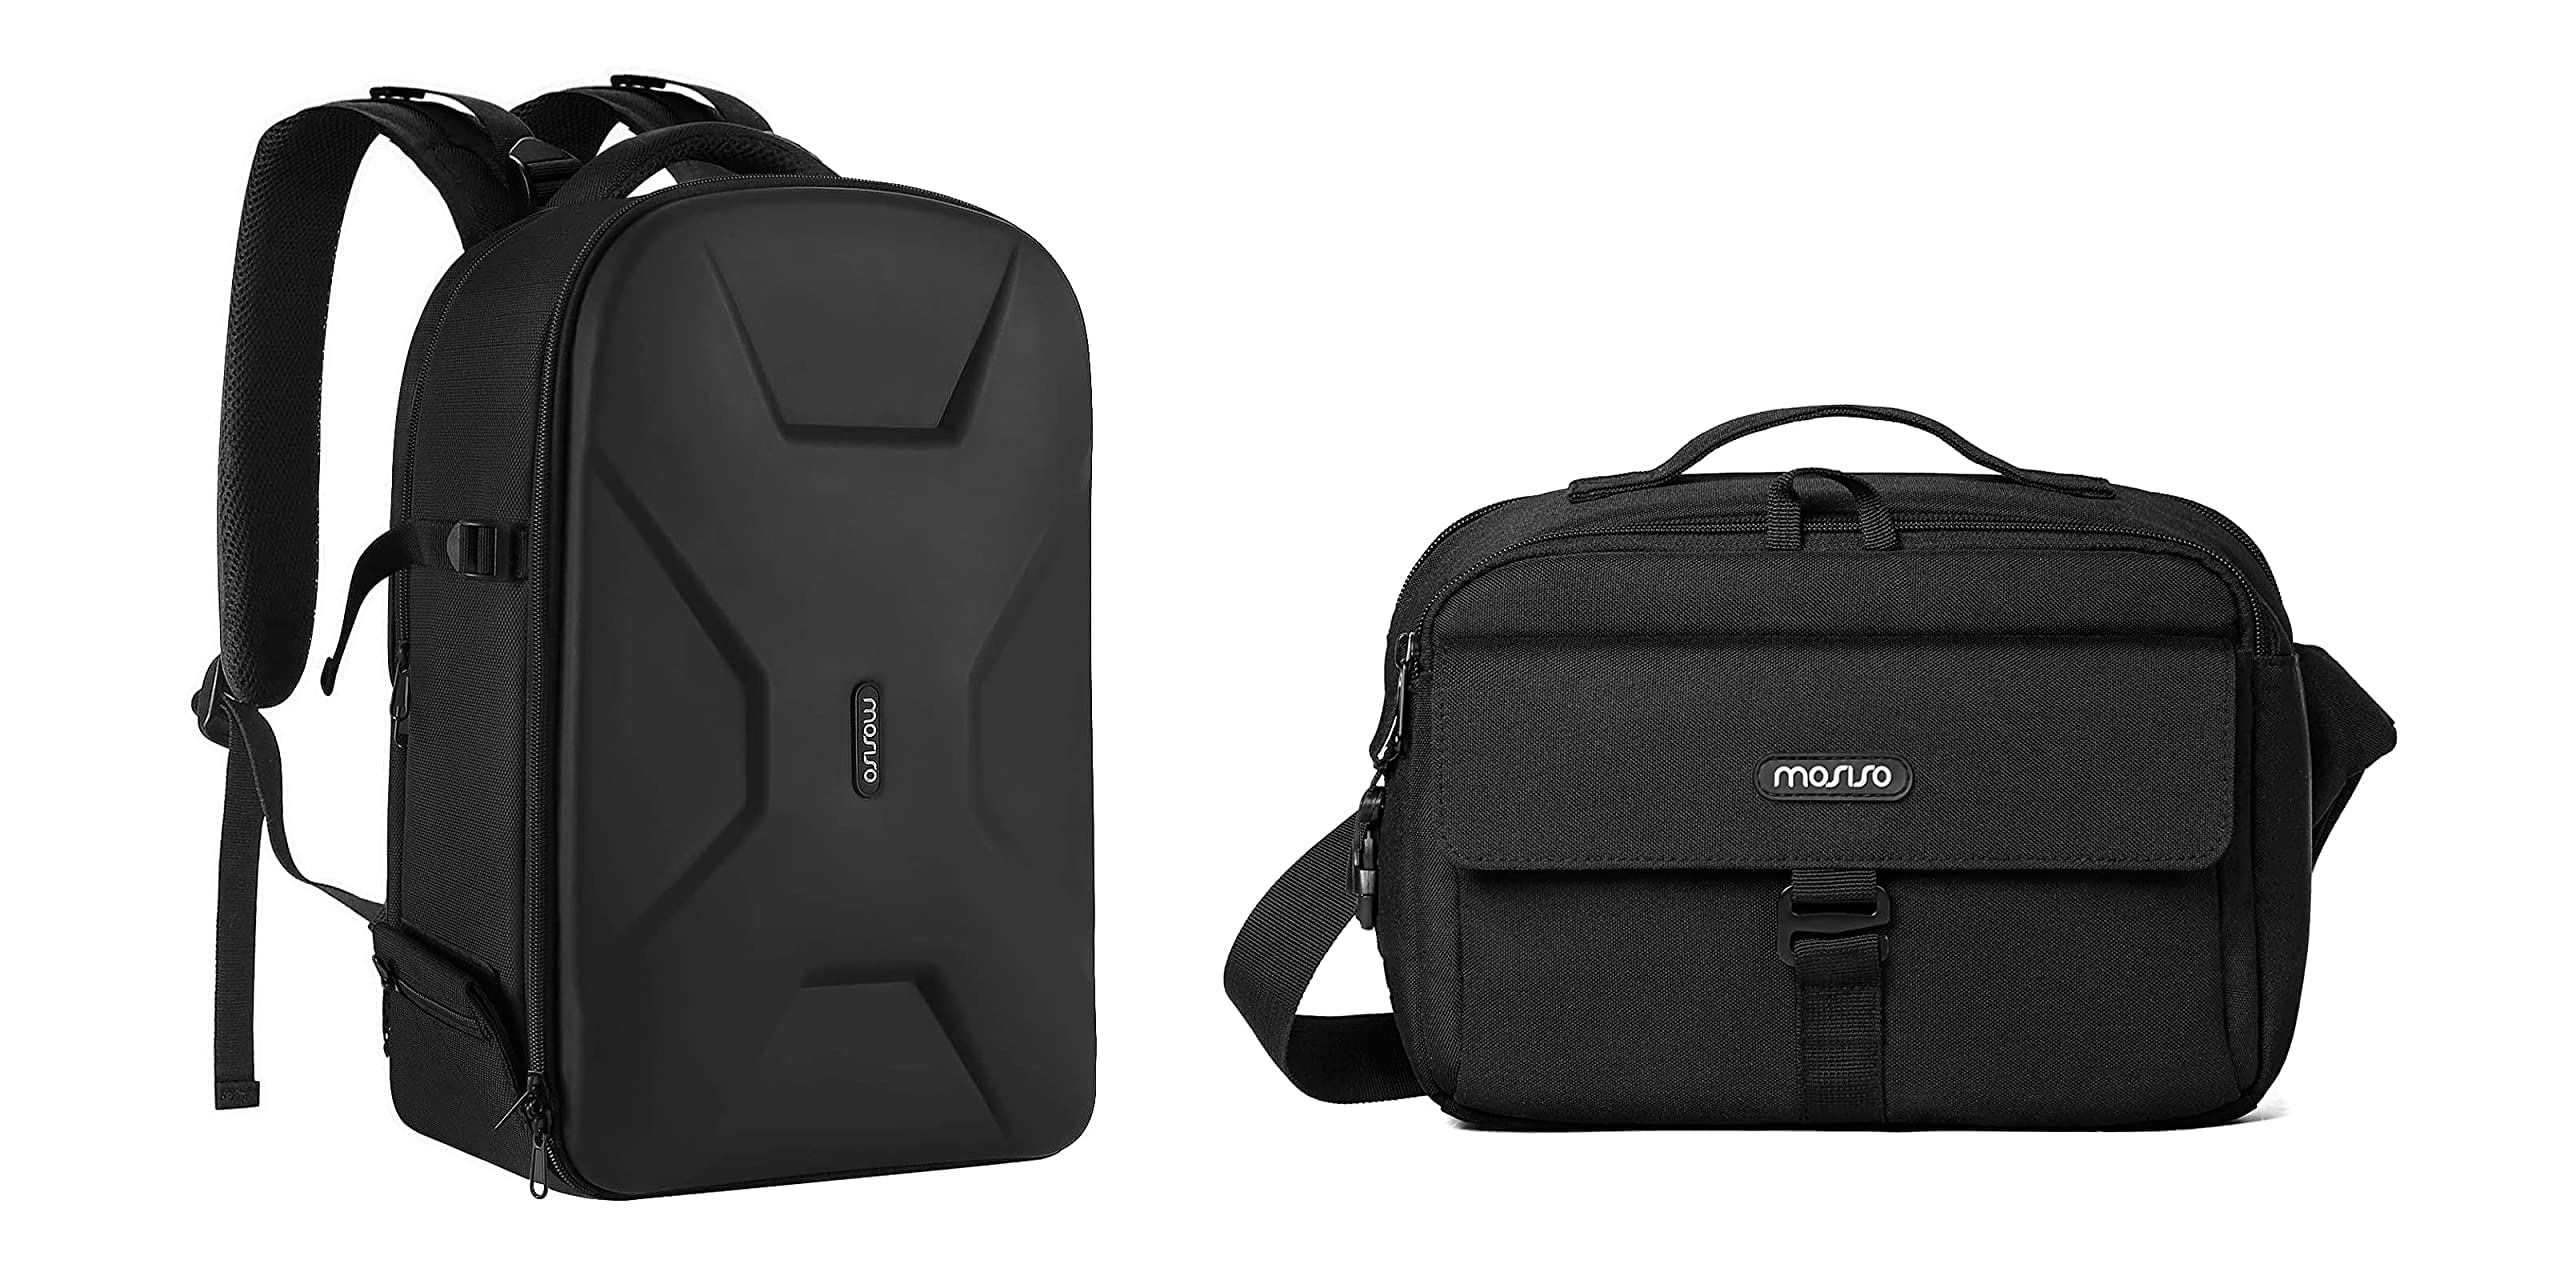 送料無料MOSISO Camera Backpack Bag Case DSLRSLRMirrorless Photography Camera Bag 15-16 inch Waterproof Hardshell Case